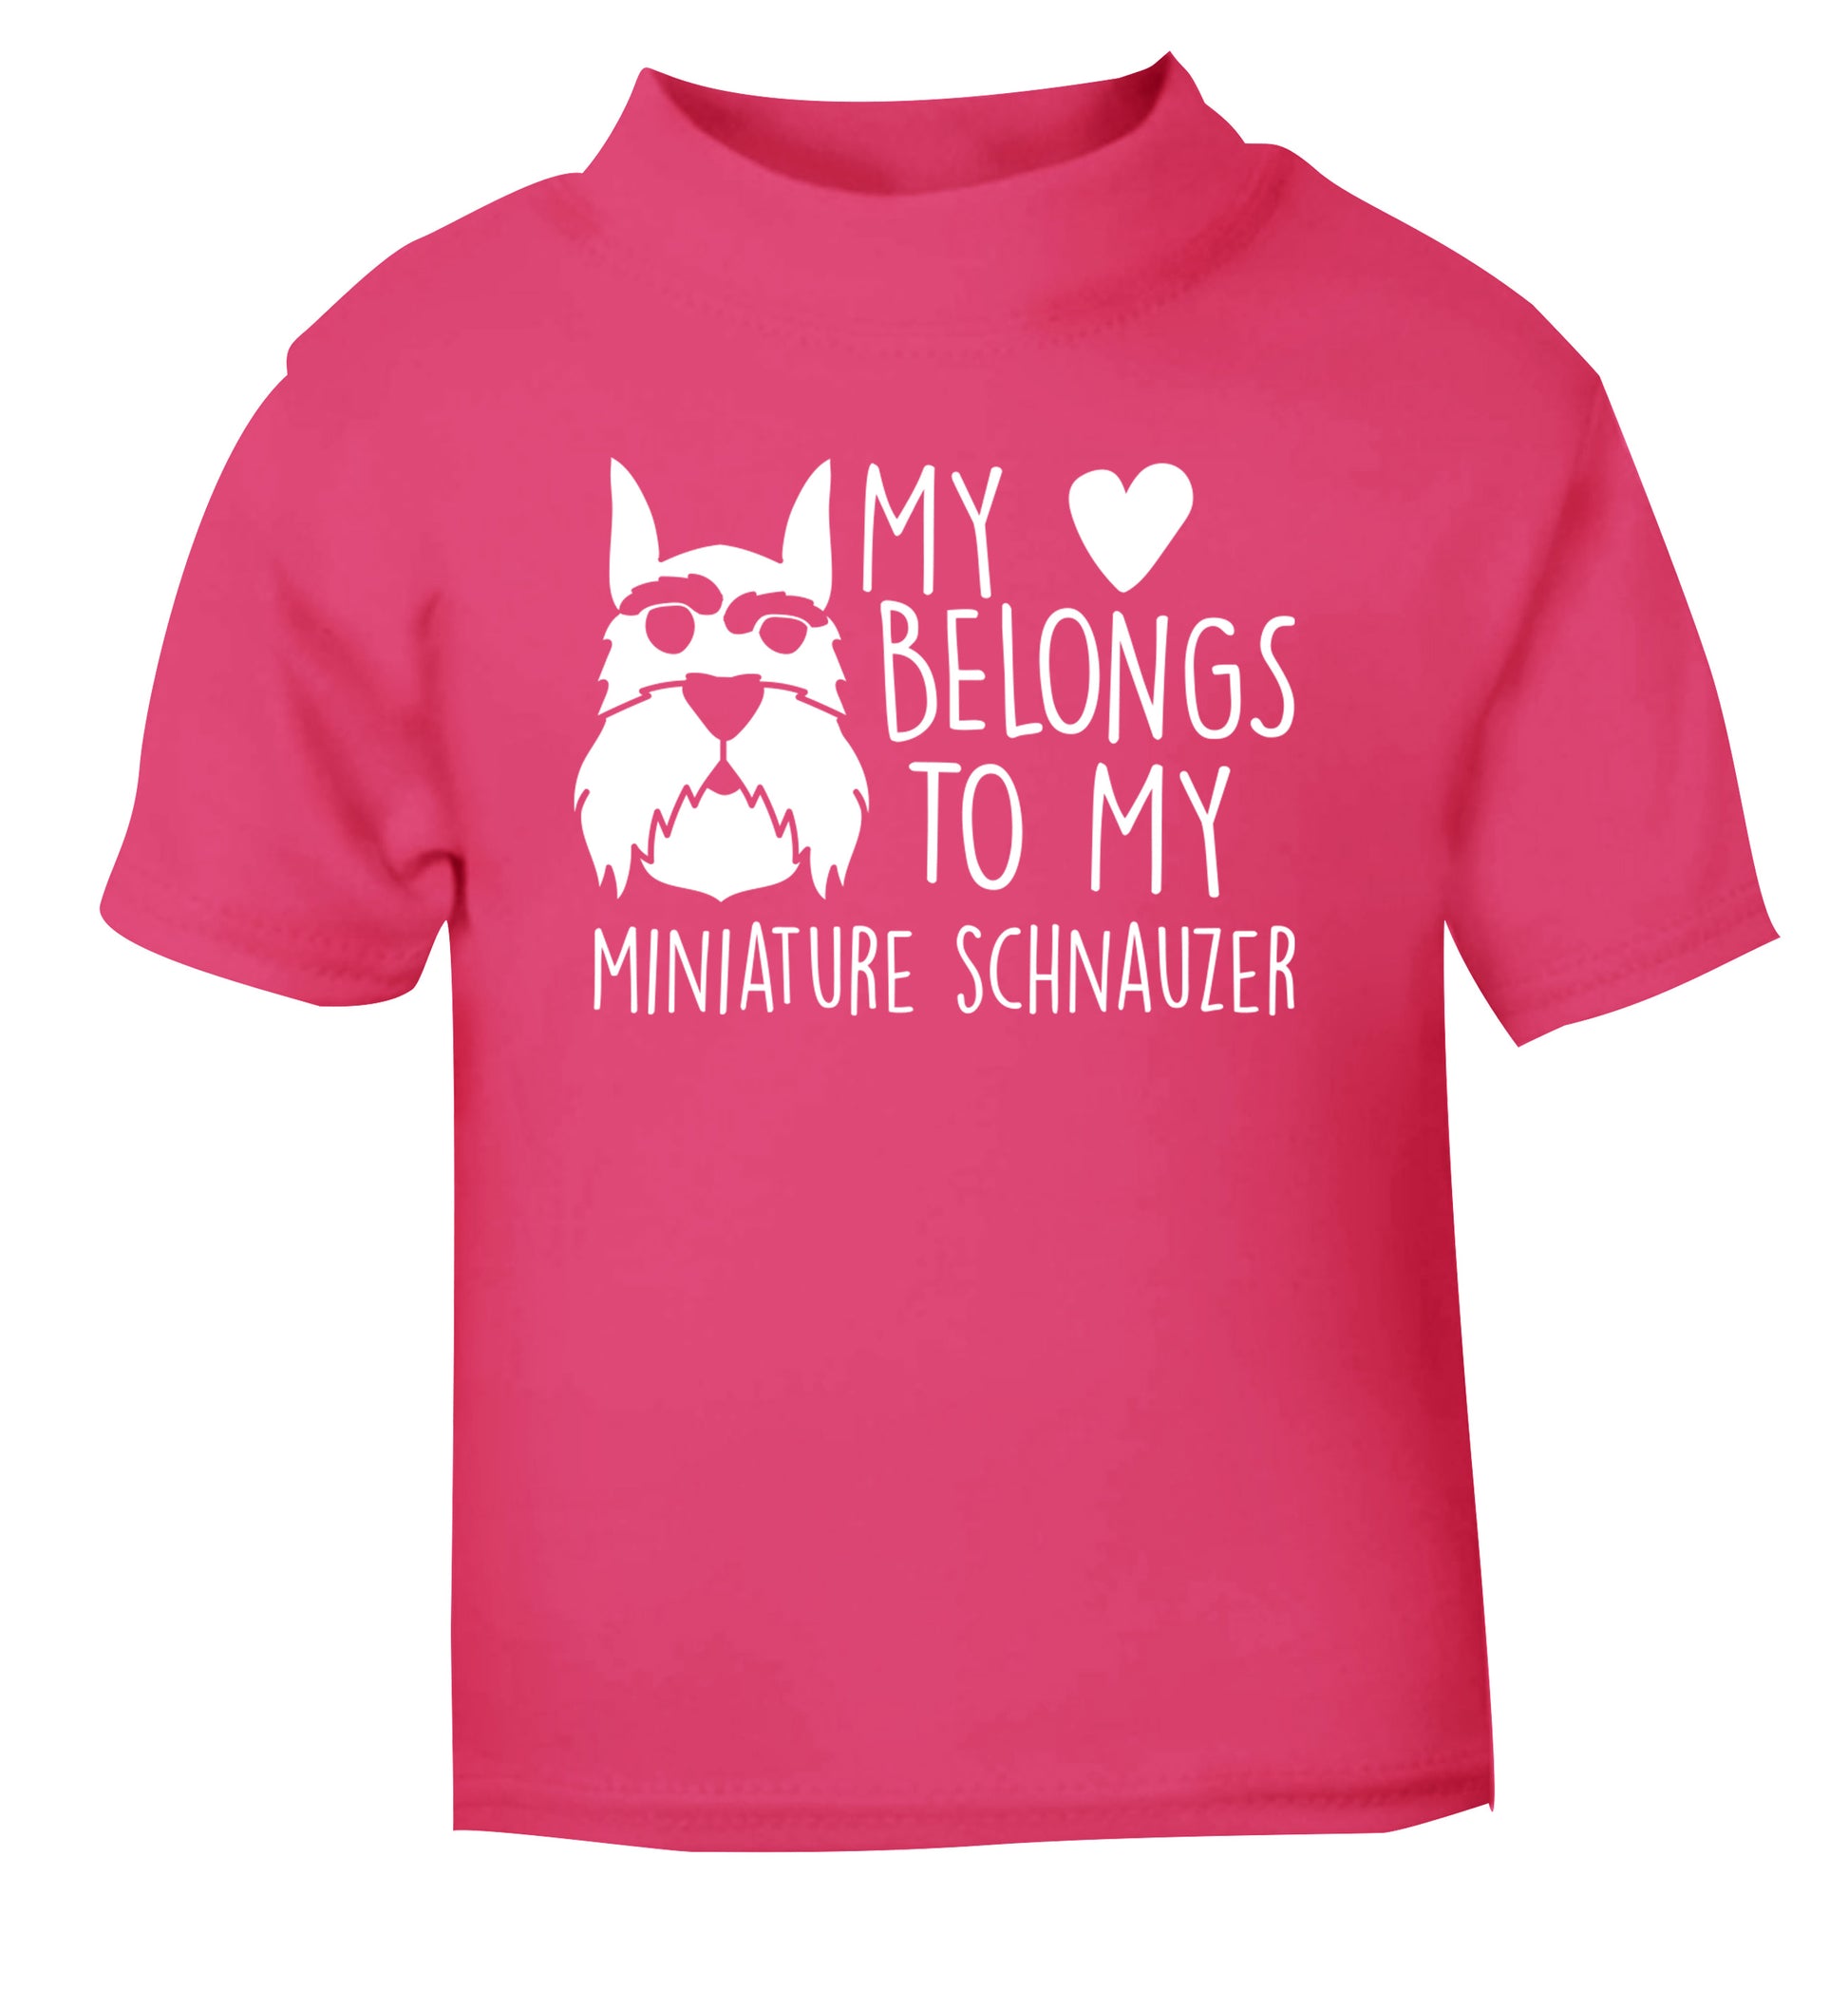 My heart belongs to my miniature schnauzer pink Baby Toddler Tshirt 2 Years